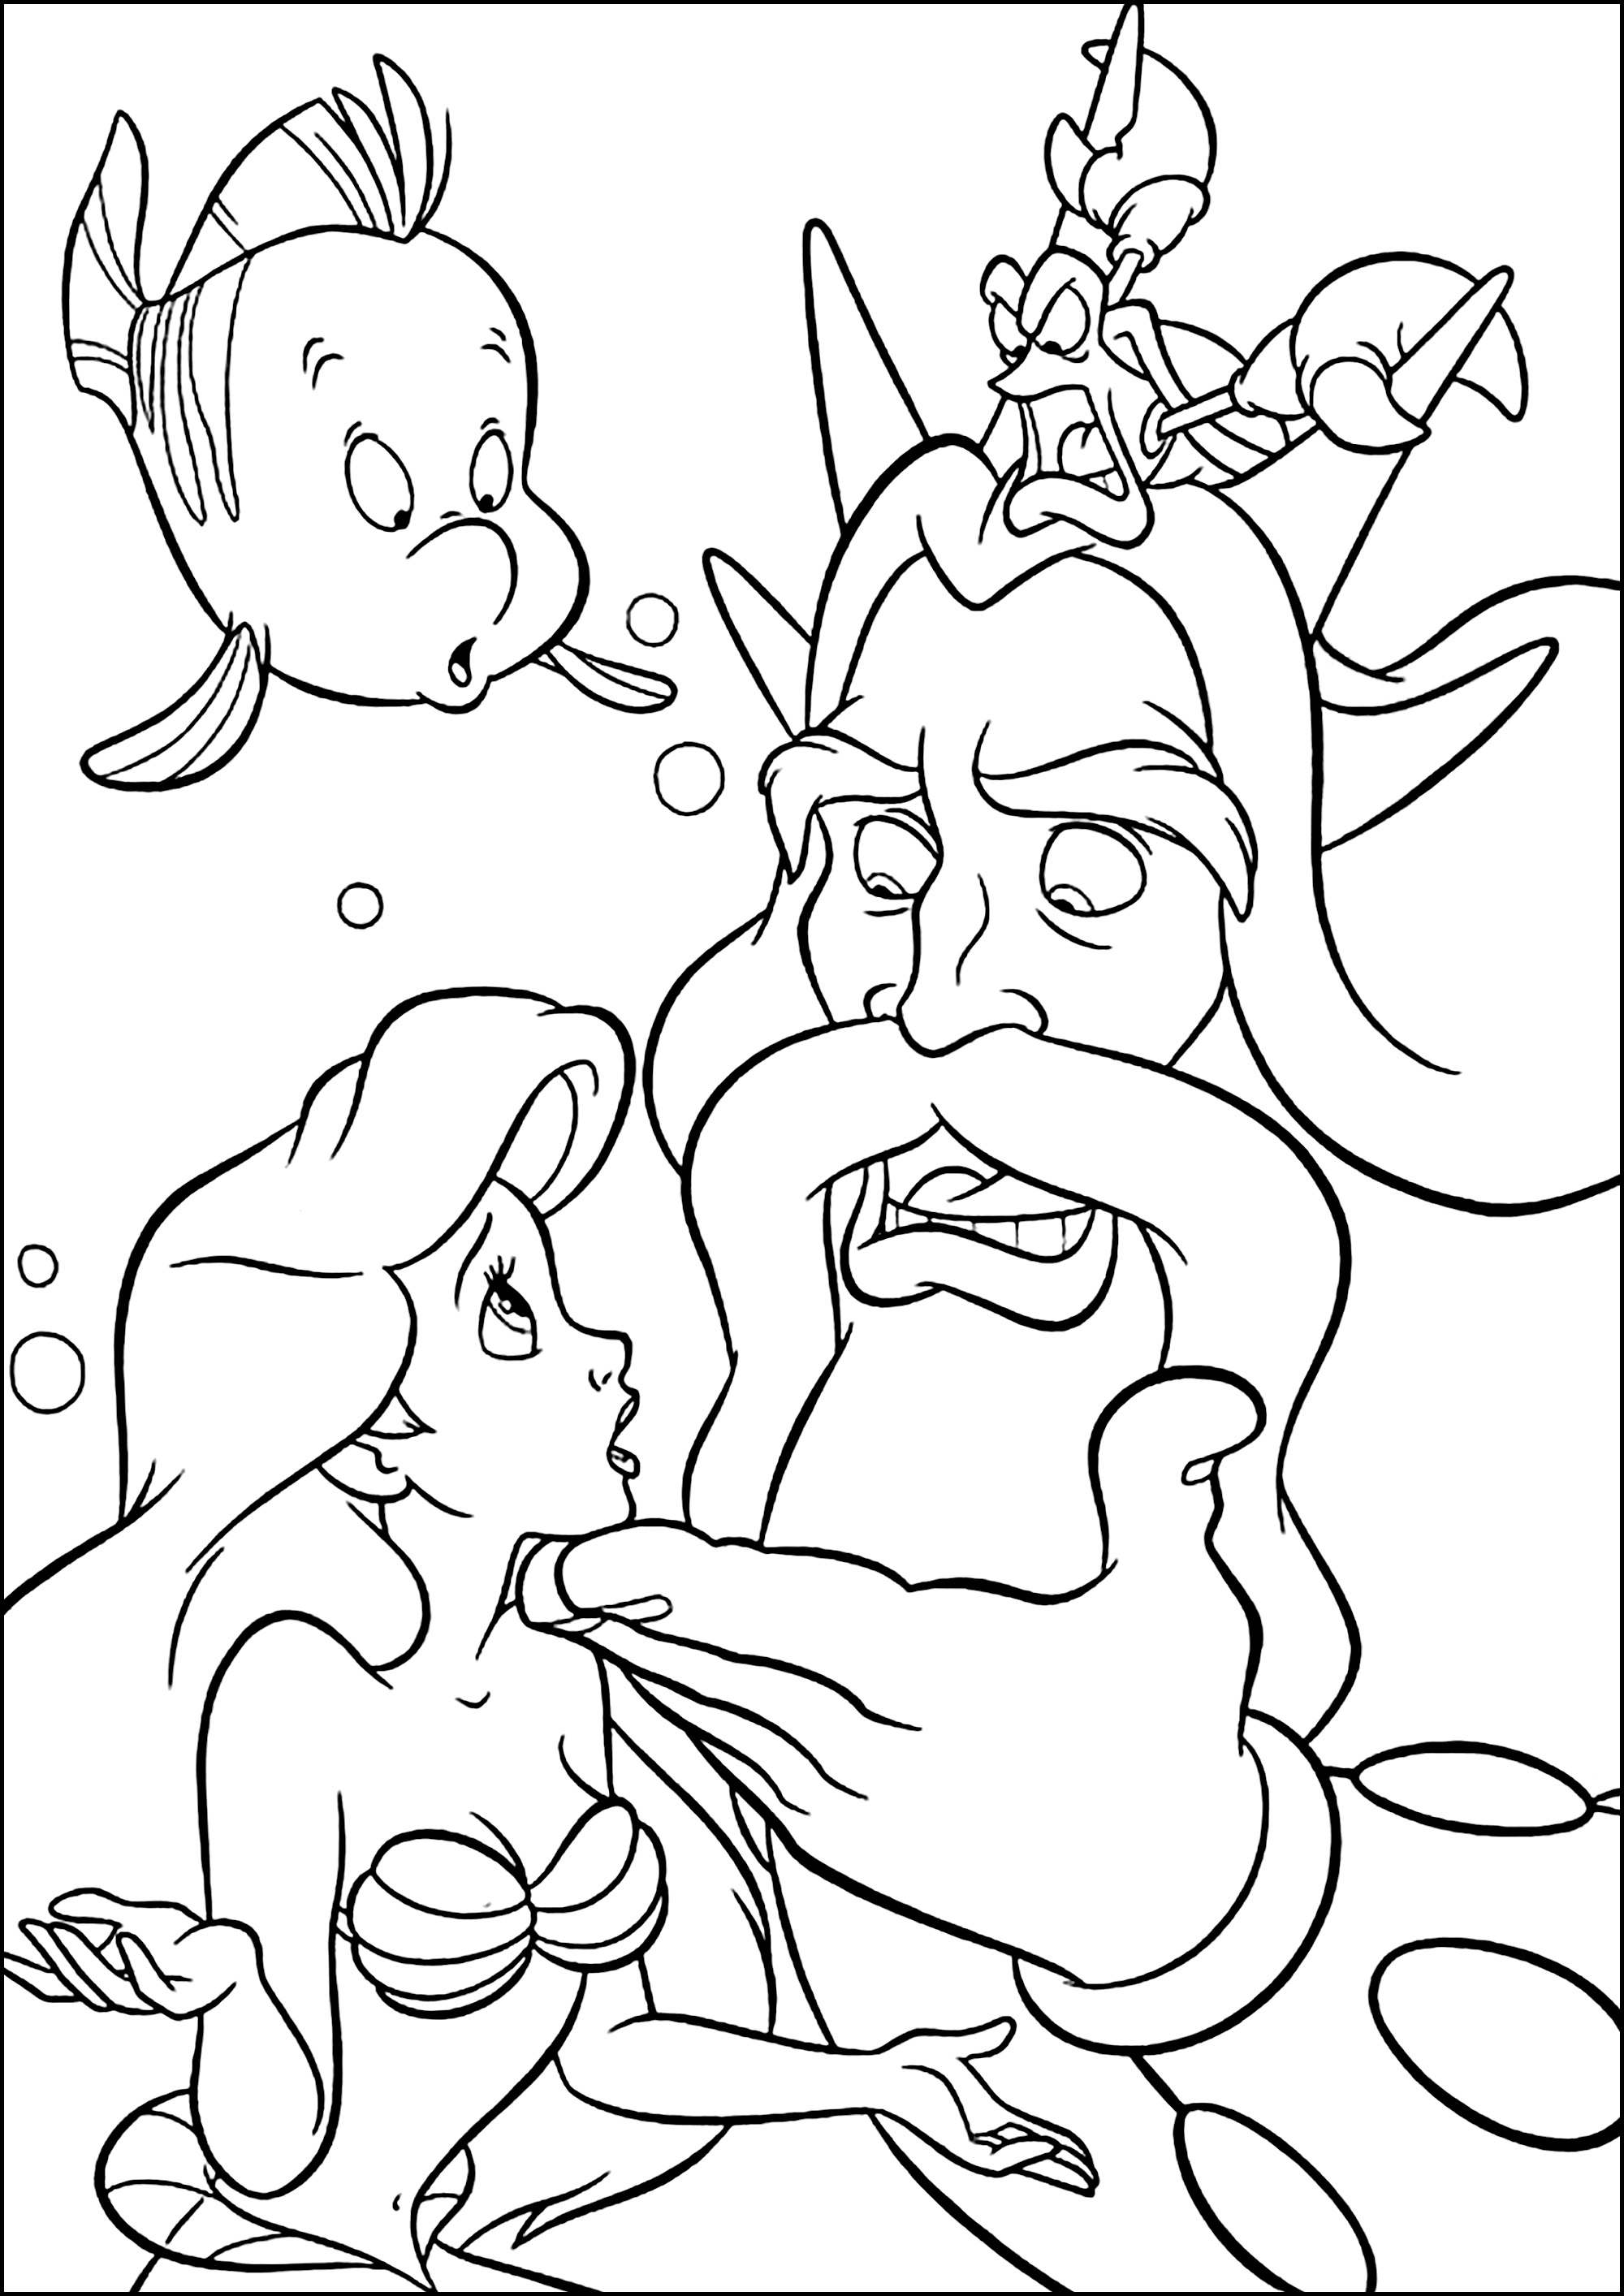 Página para colorir de Ariel com o seu pai, o Rei Tritão